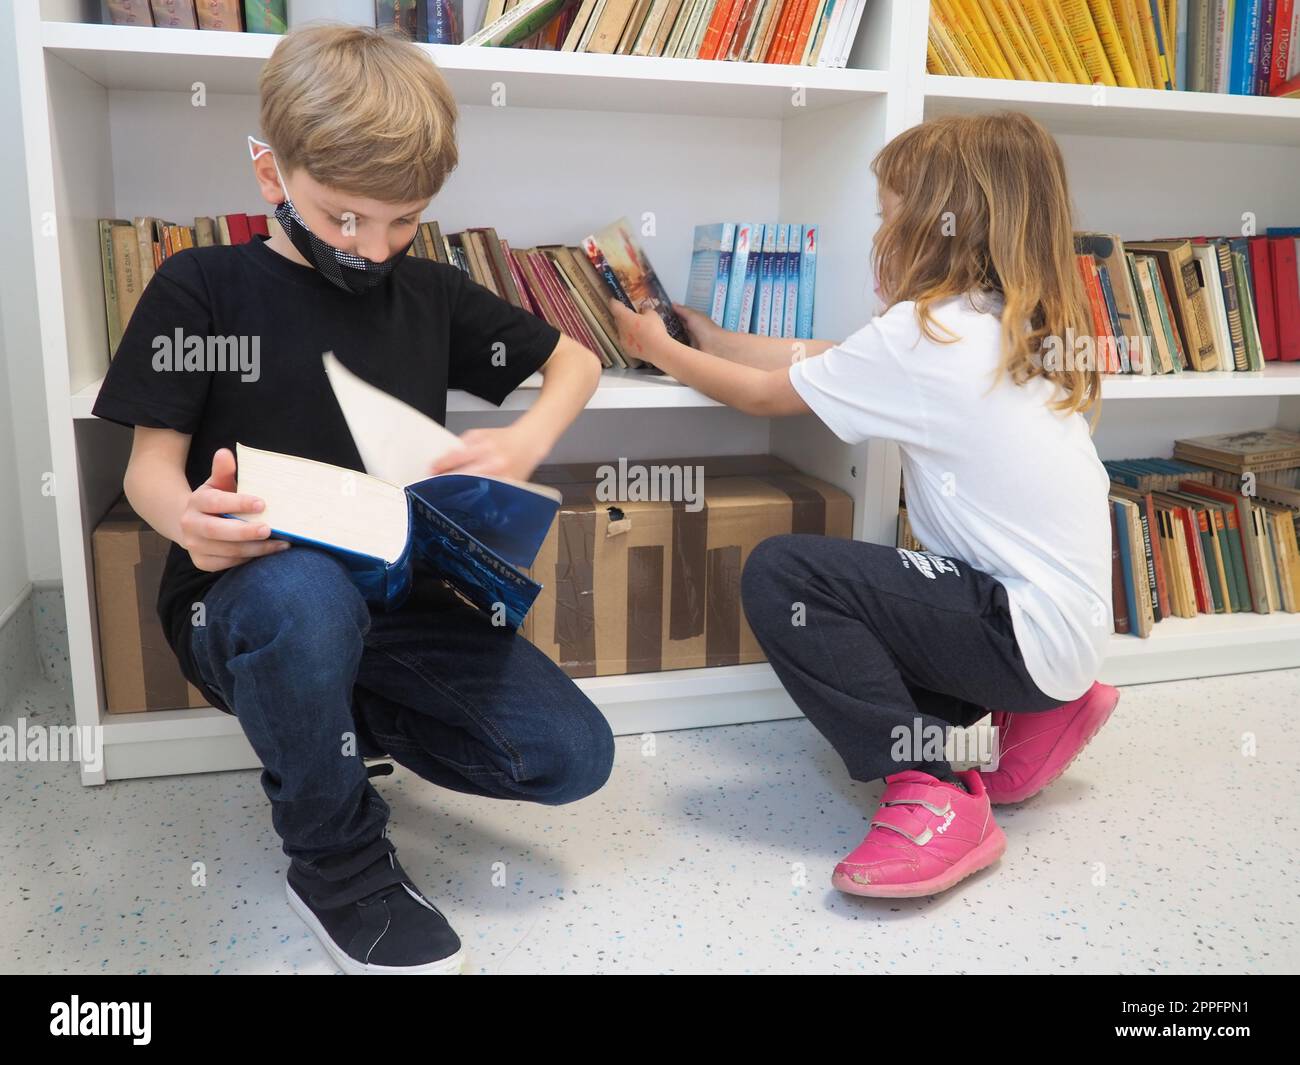 Sremska Mitrovica, Serbien, 15. Mai 2021 Kinder in der Schulbibliothek. Ein Junge und ein Mädchen suchen und blättern durch Bücher am Bücherregal. Der Junge liest ein sehr dickes Buch. Schulbildung. Teenager lernen Stockfoto